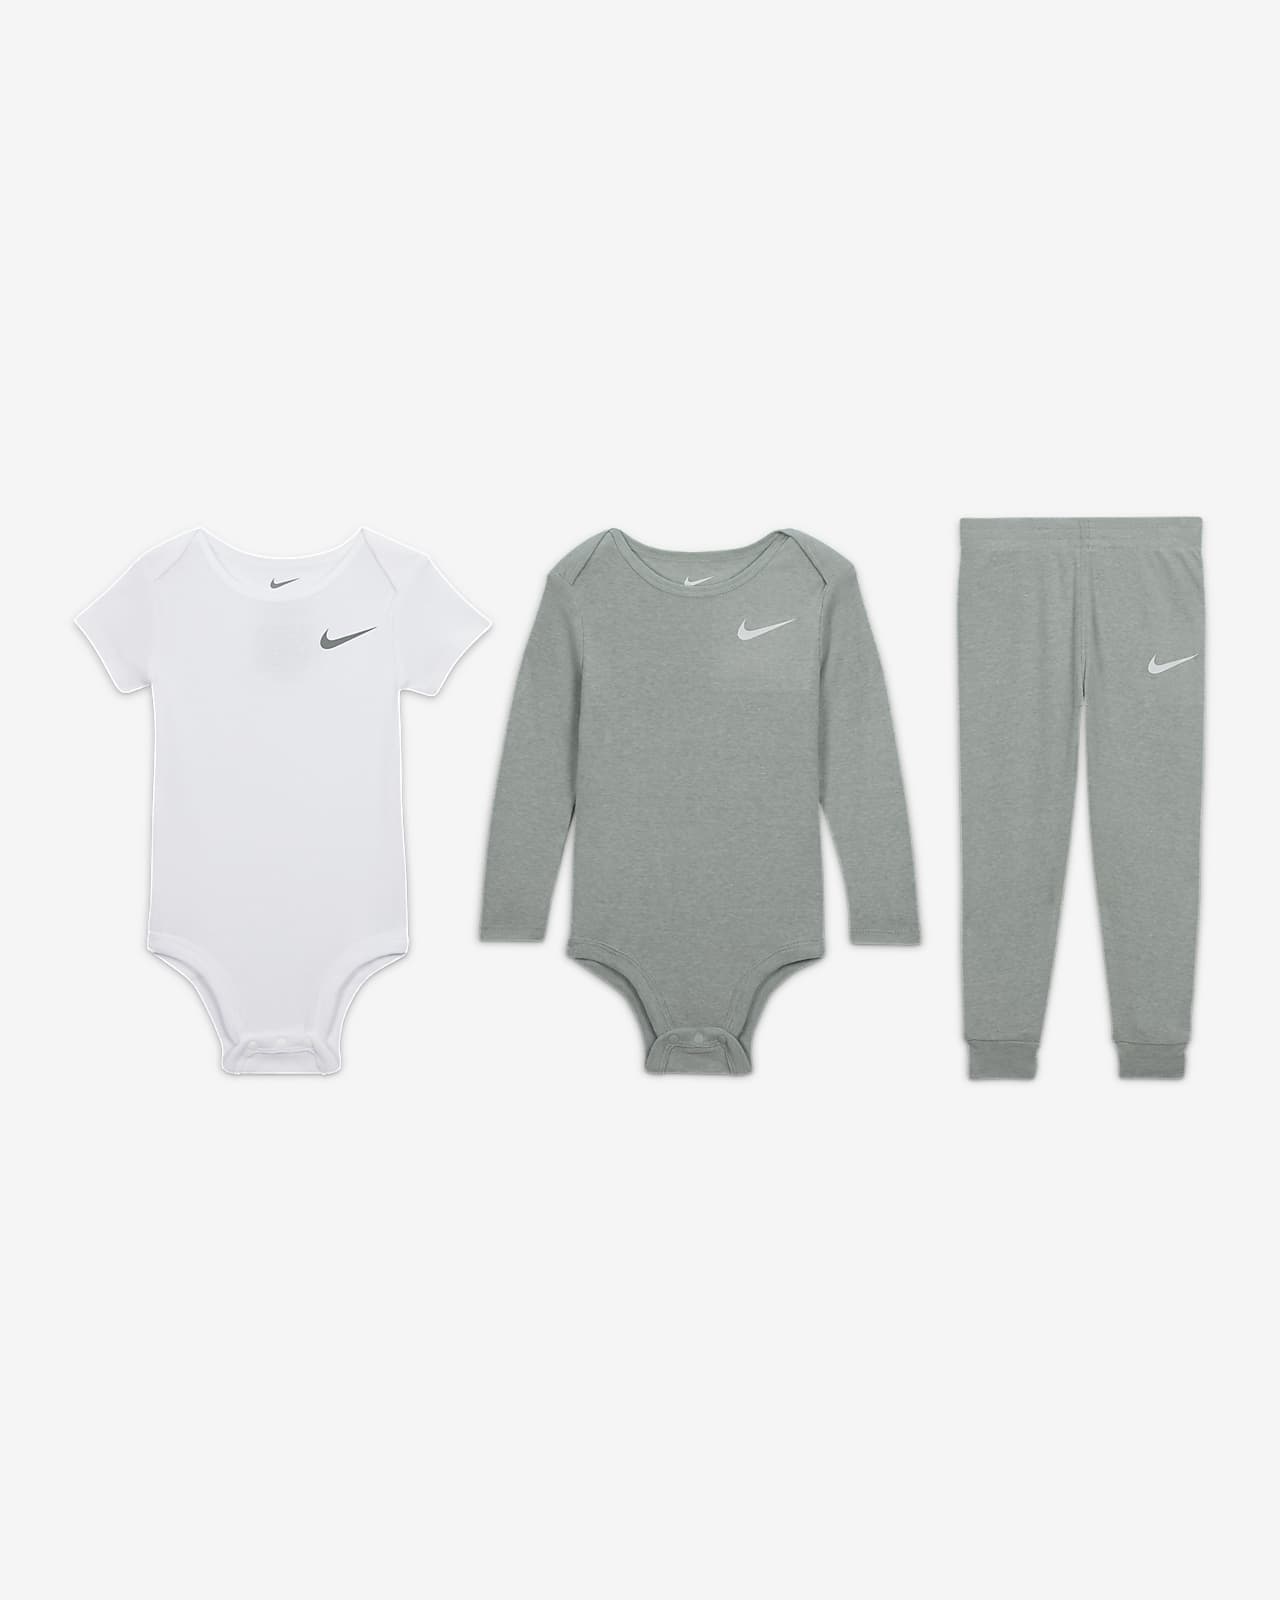 Nike Essentials 3-Piece Pants Set Set. 3-Piece Baby